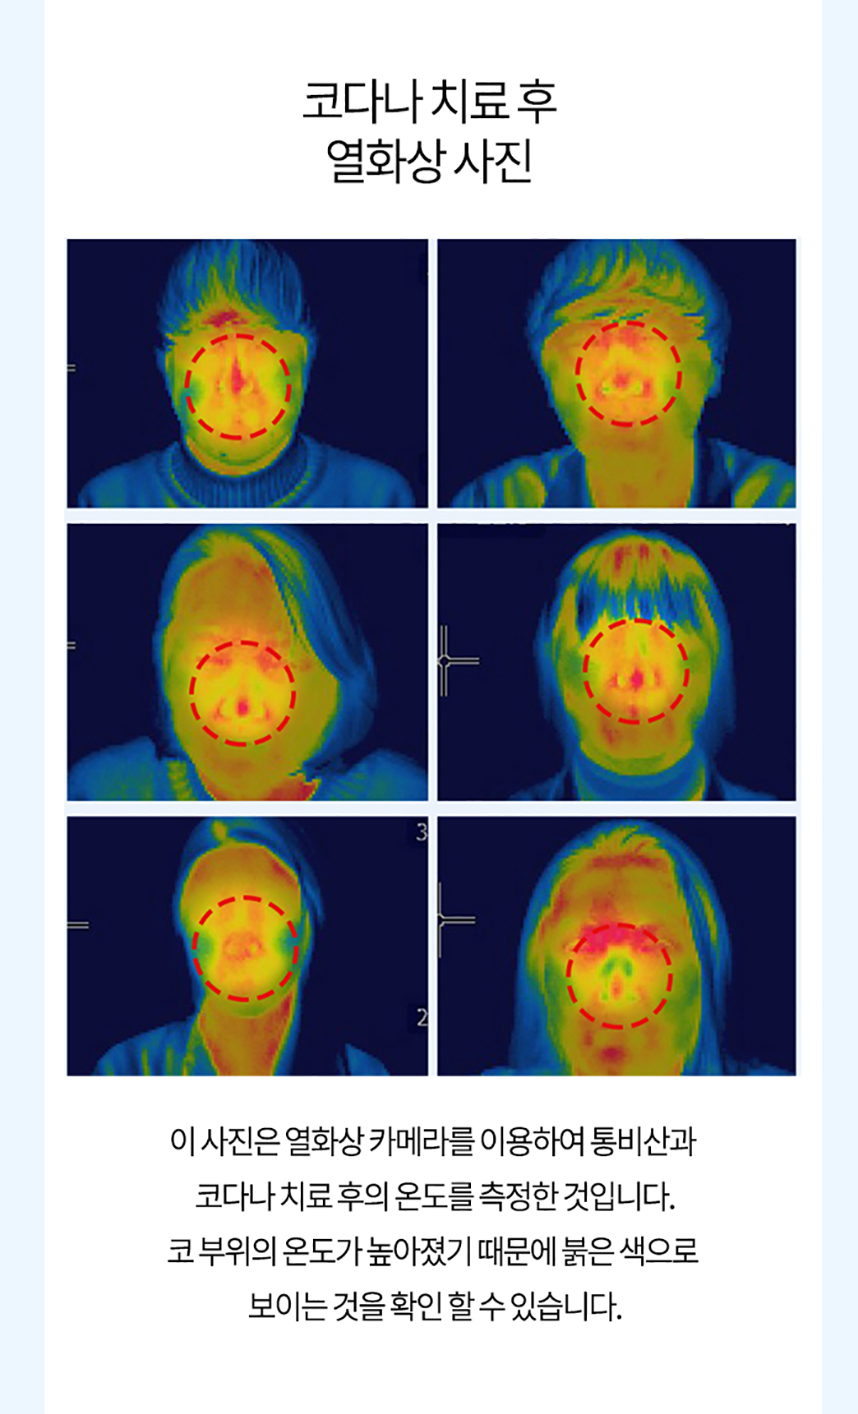 코다나 치료 후 열화상 사진 코부위의 온도가 높아졌기 때문에 붉은 색으로 보이는 것을 확인 할 수 있습니다.